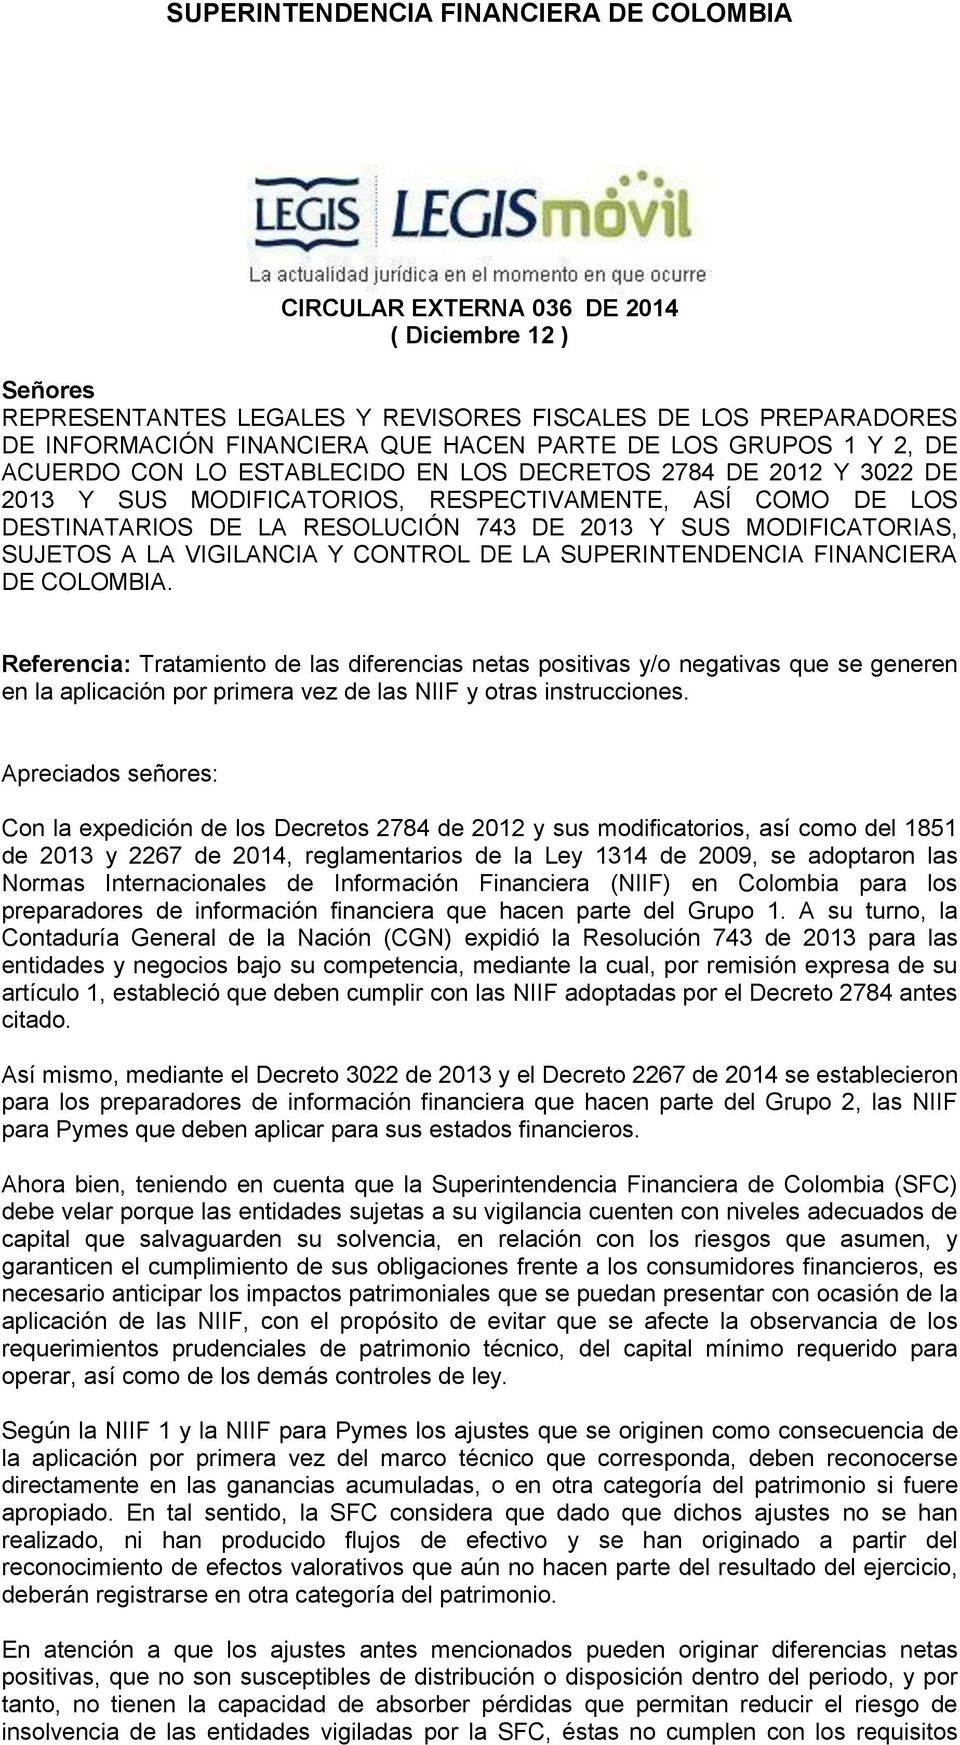 Y CONTROL DE LA SUPERINTENDENCIA FINANCIERA DE COLOMBIA.